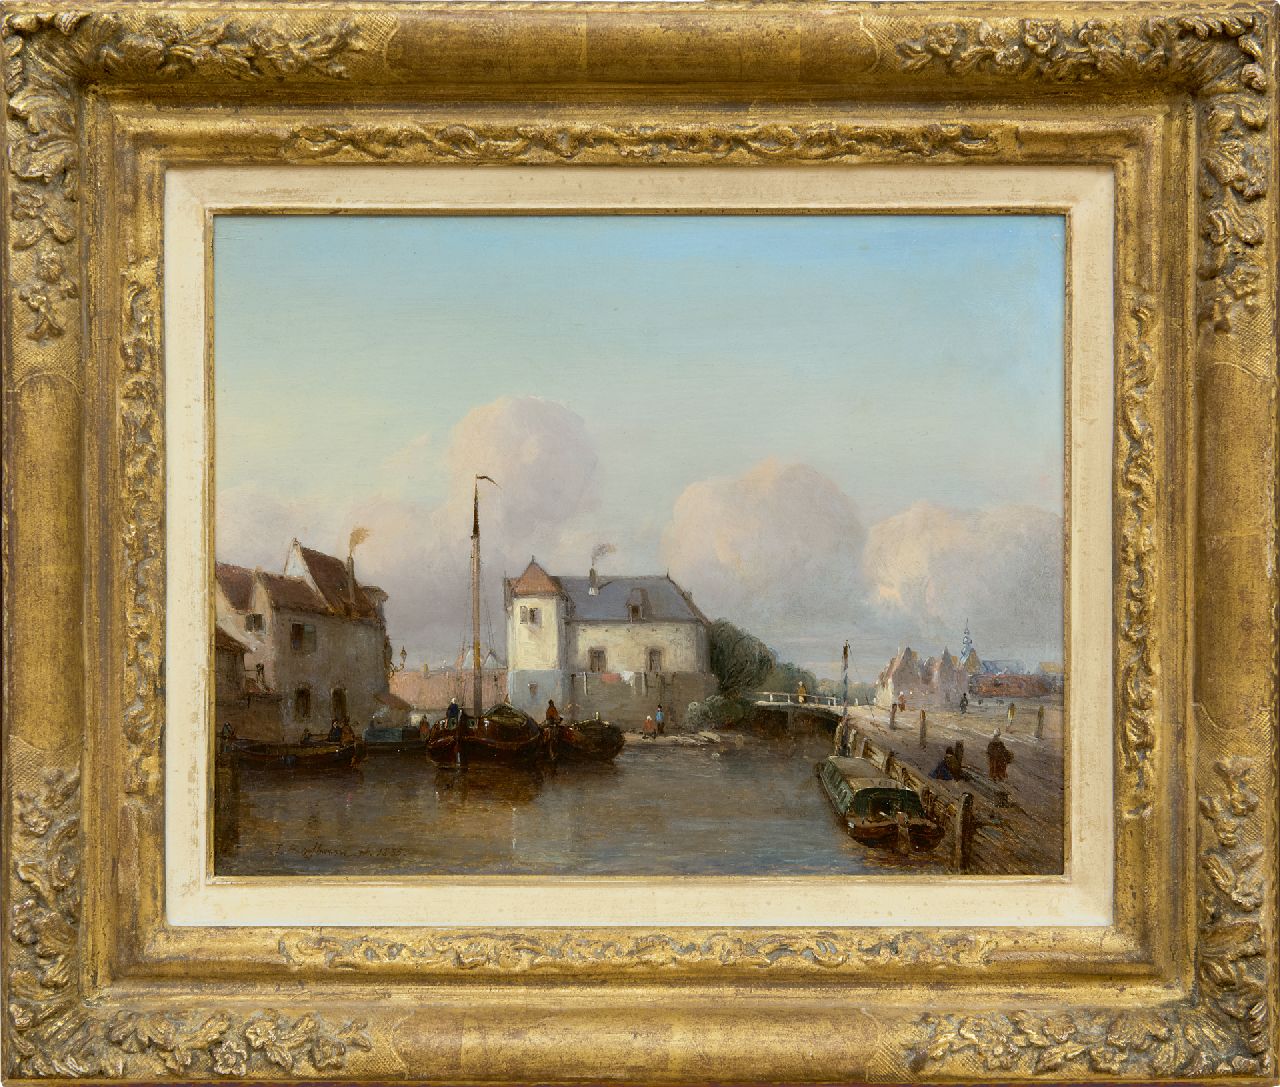 Bosboom J.  | Johannes Bosboom, Holländischer Binnenhafen, Öl auf Holz 24,8 x 31,7 cm, Unterzeichnet u.l. und datiert 1835